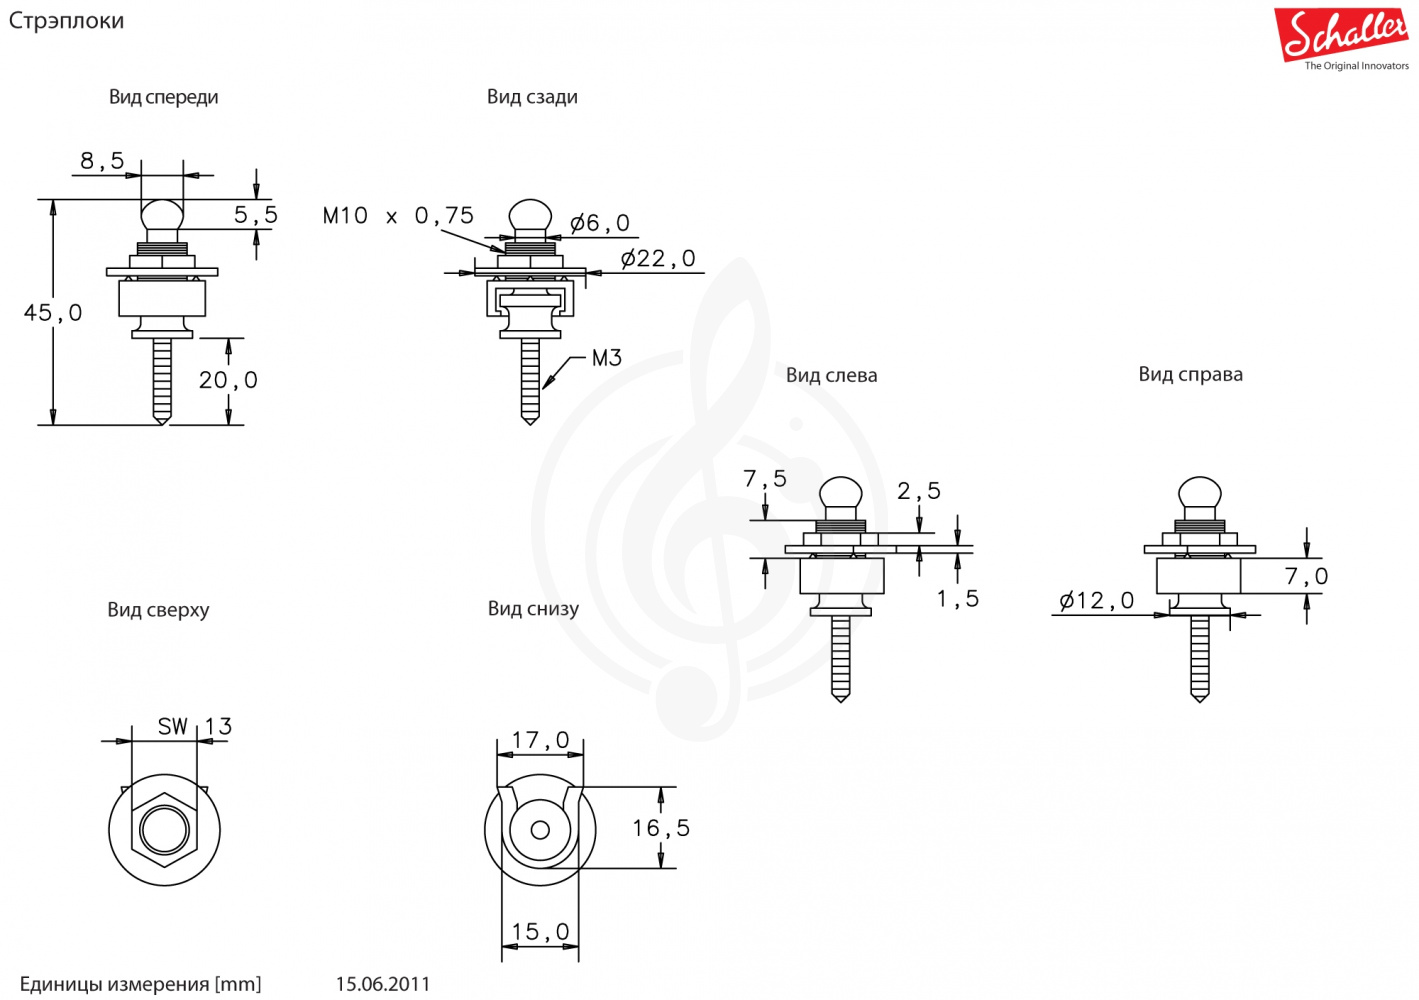 Гитарная фурнитура и механика Стреплоки Schaller Schaller 14010101 Security lock - Стреплок для ремня, никель, полированный, упакованы пара 14010101 - фото 2